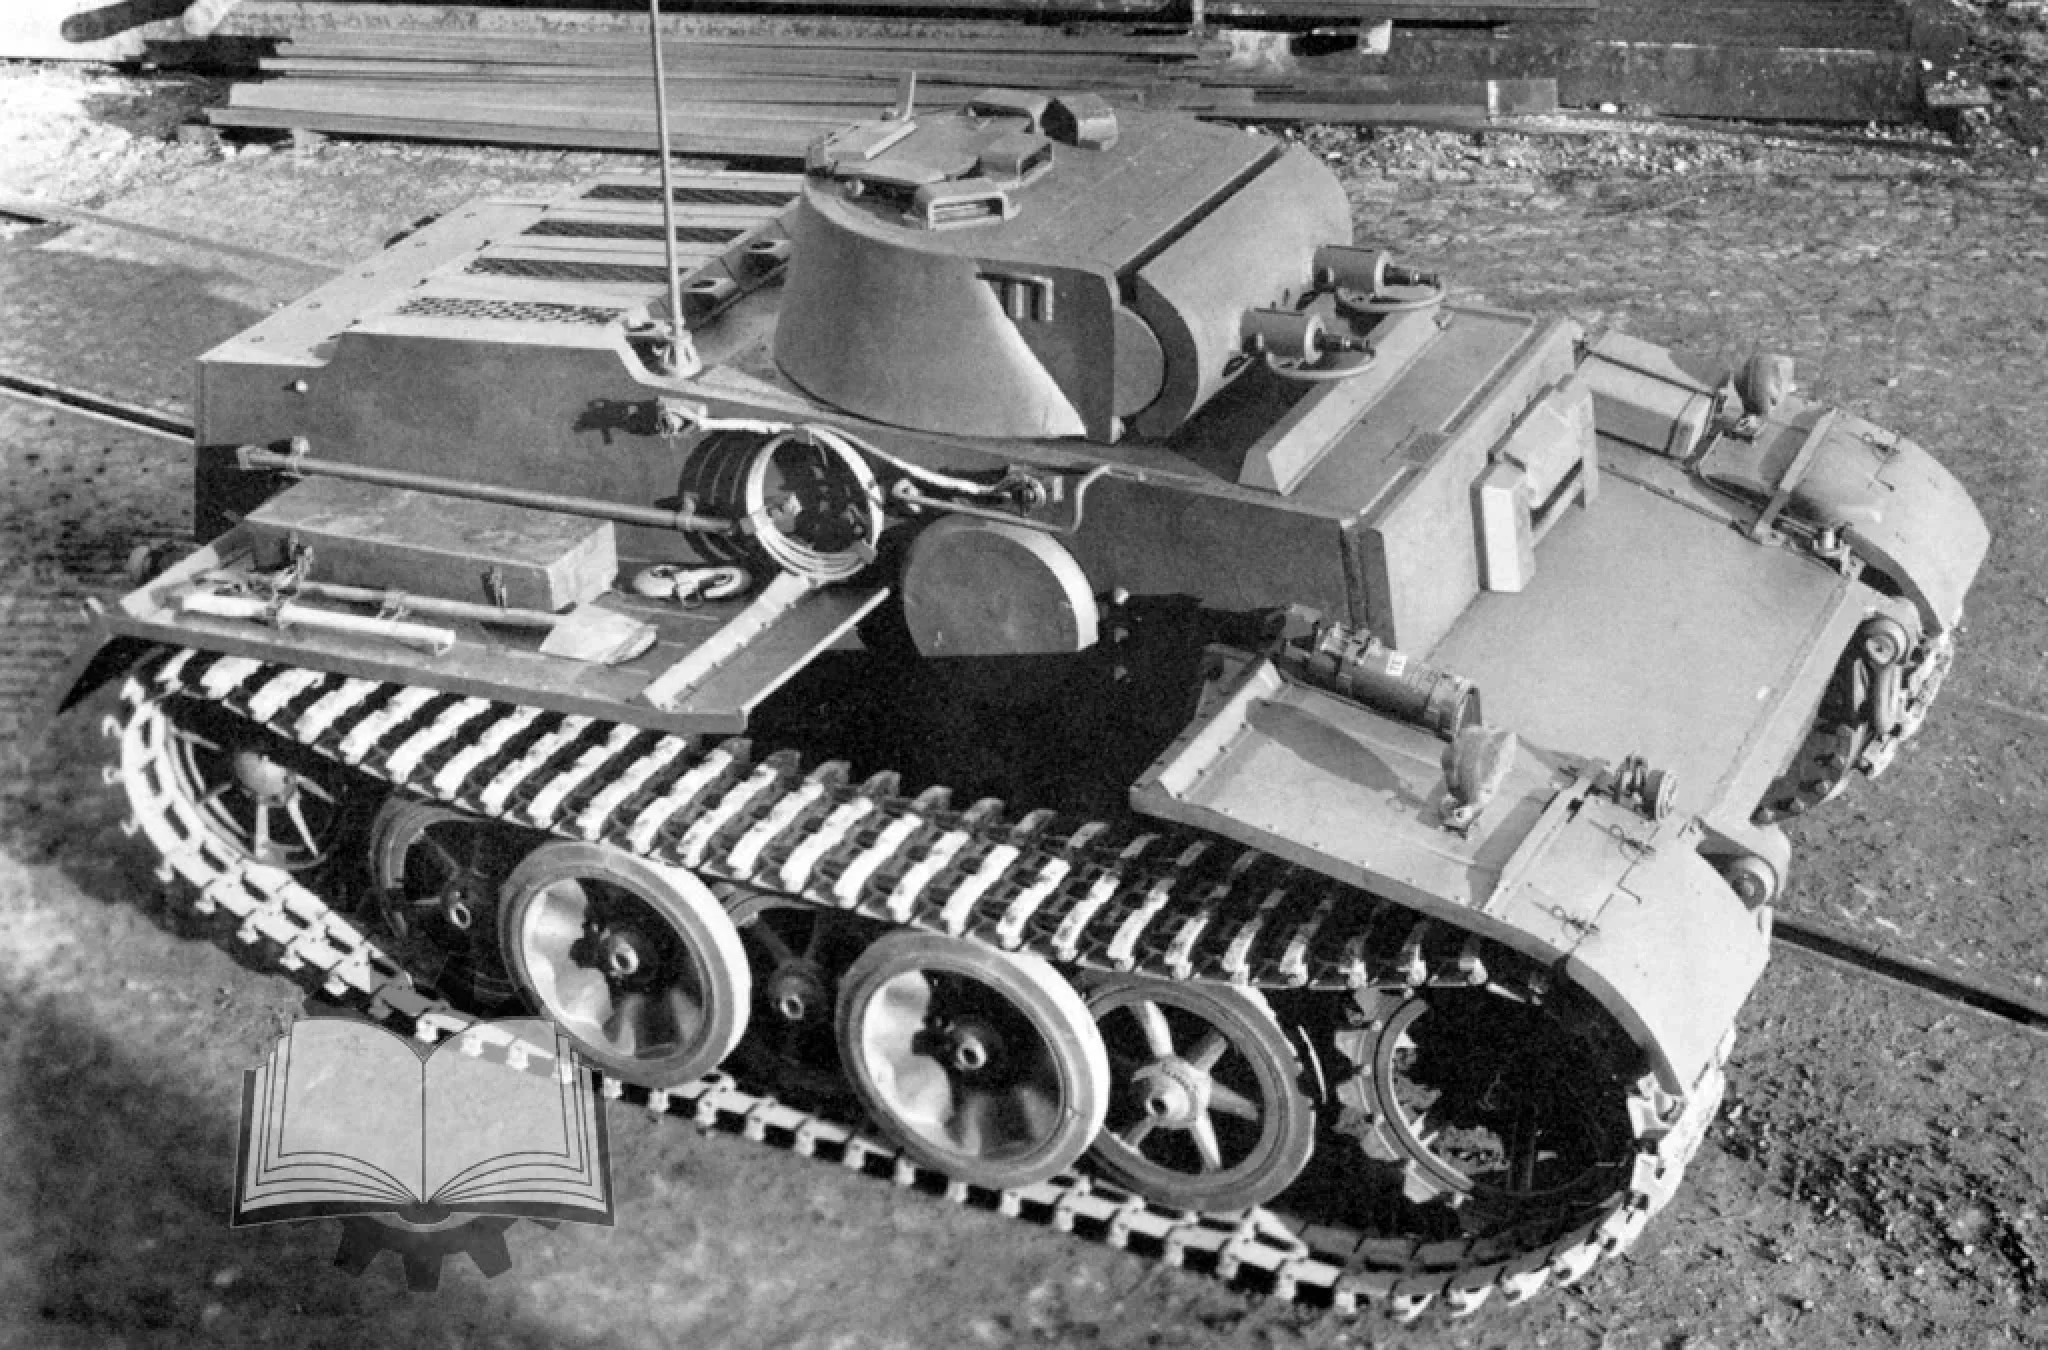 Pz kpfw 1 ausf. PZ 1 Ausf f. Танк панцер 1. Танк PZ Kpfw 2. PZ.Kpfw. I Ausf. F.